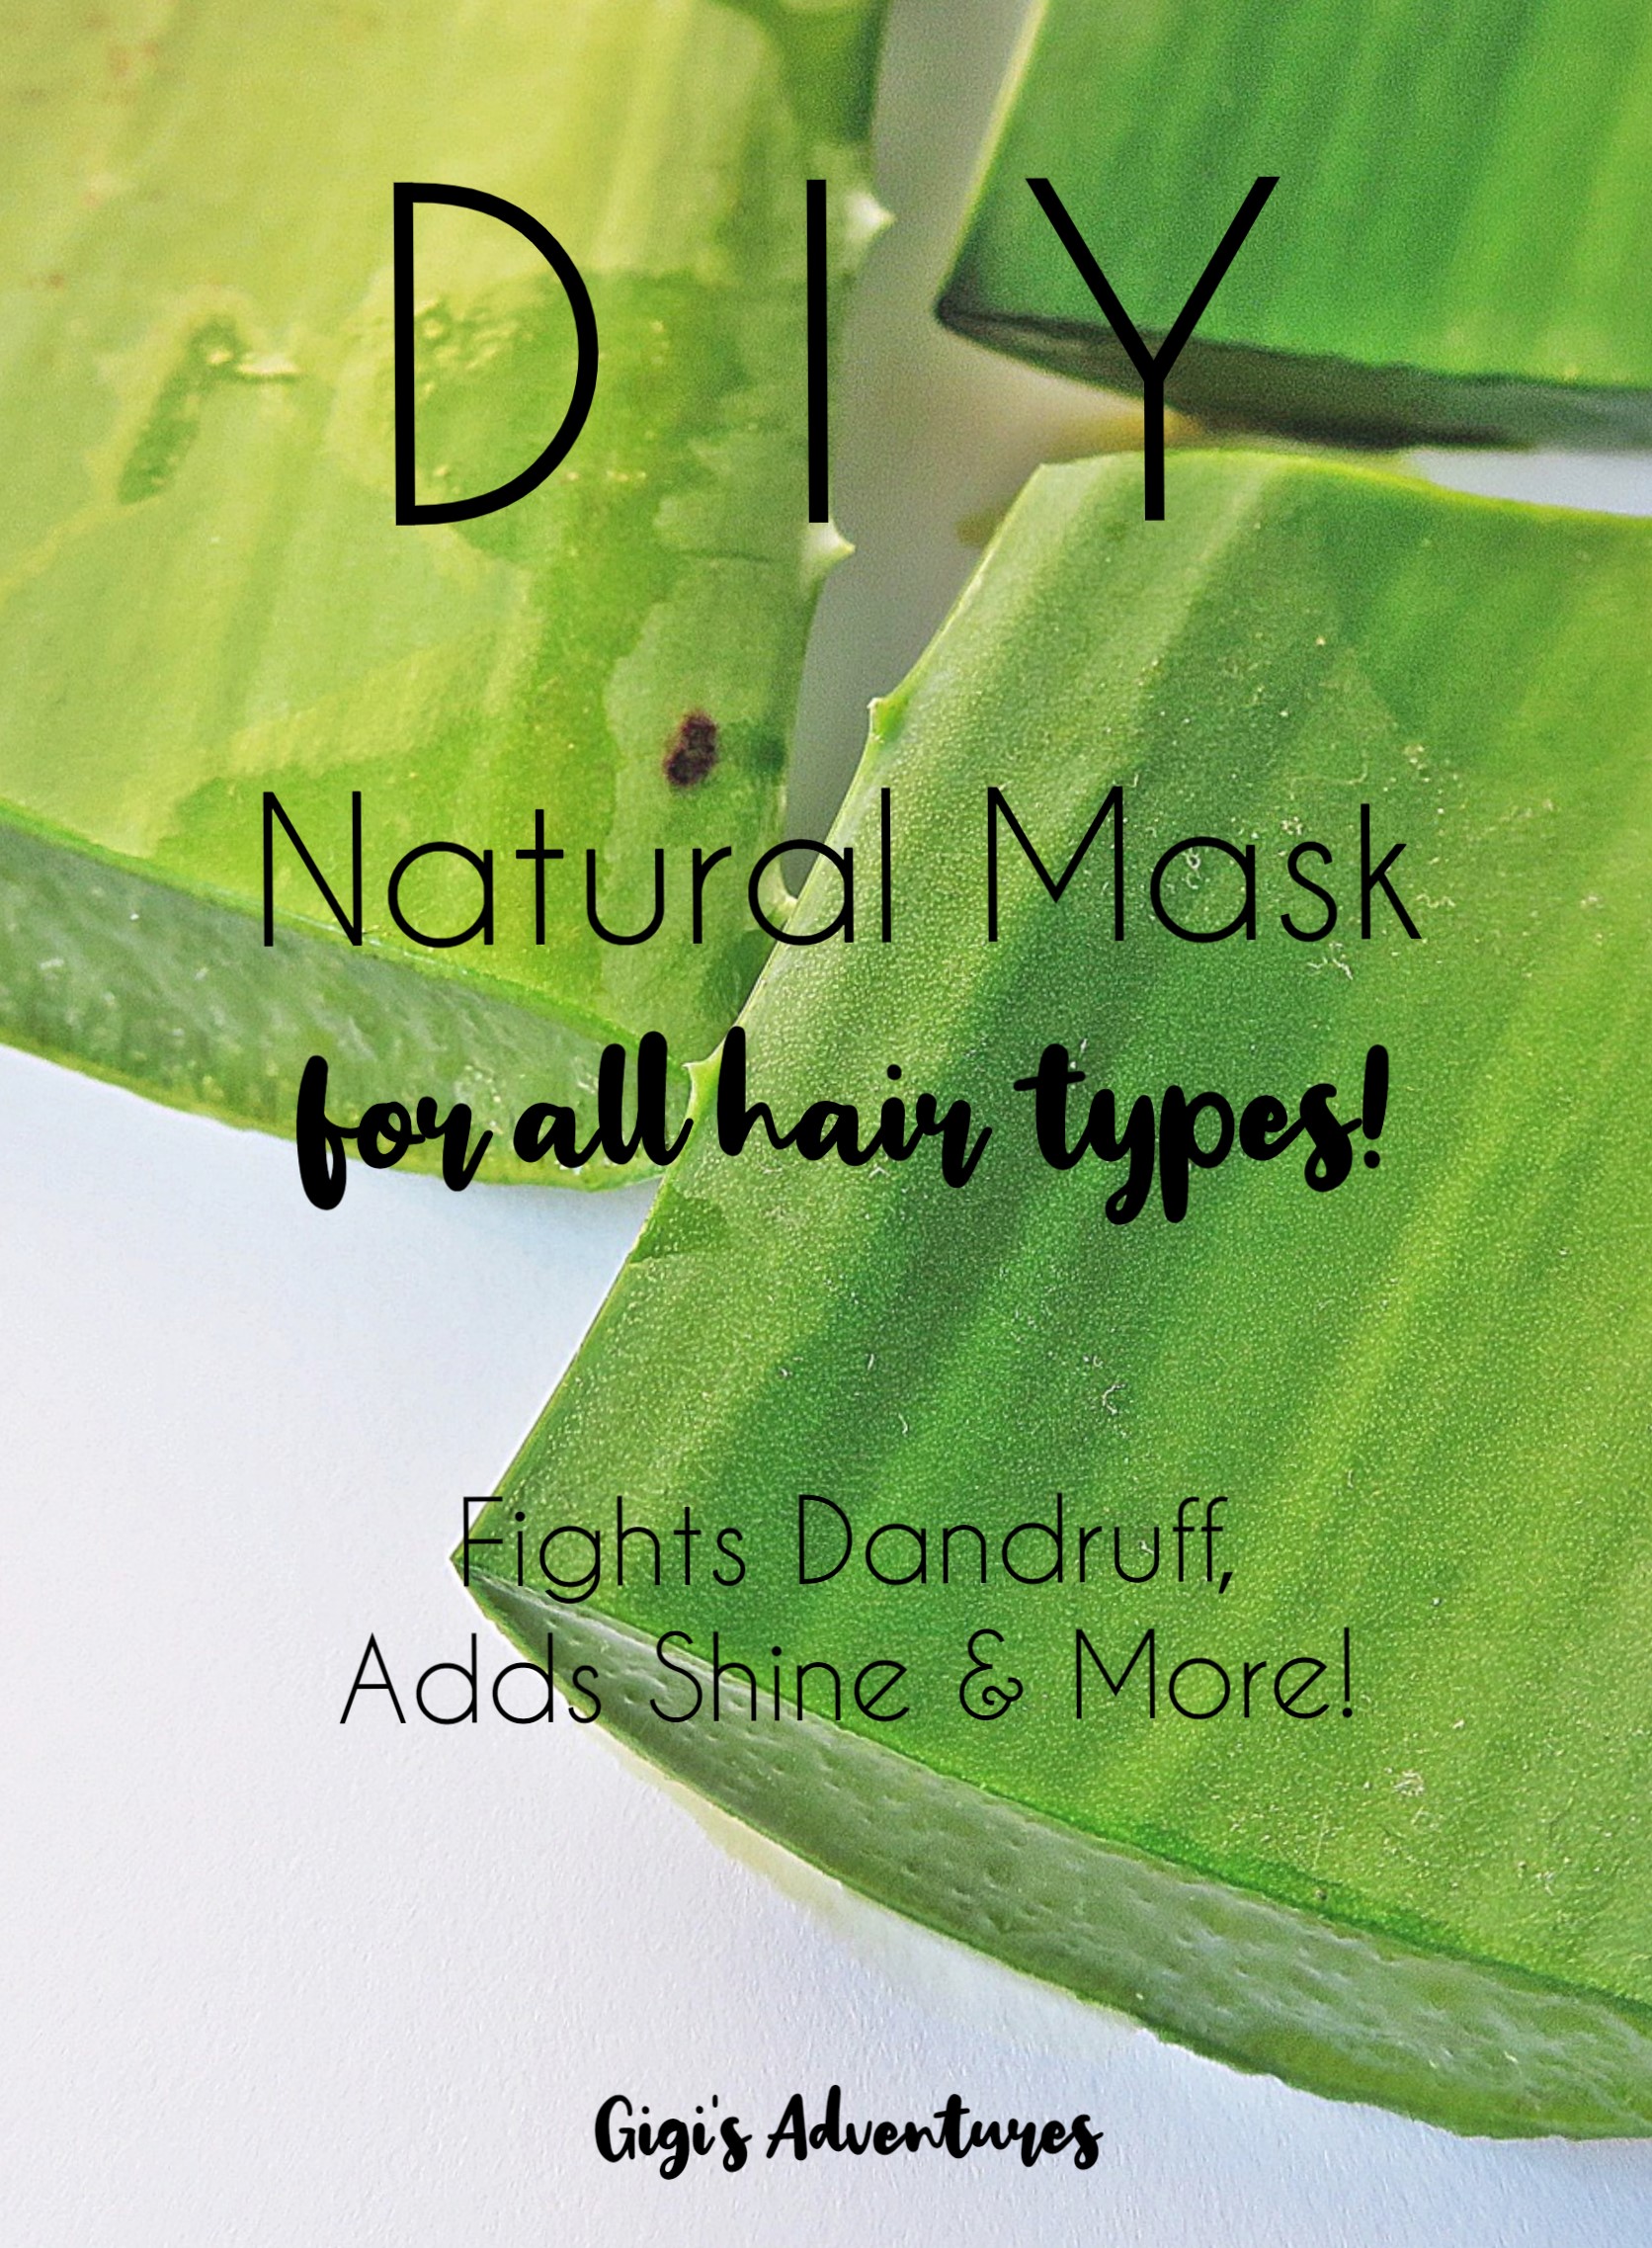 DIY Hair Mask for All Hair Types | For Lightness, Dandruff and Shine!